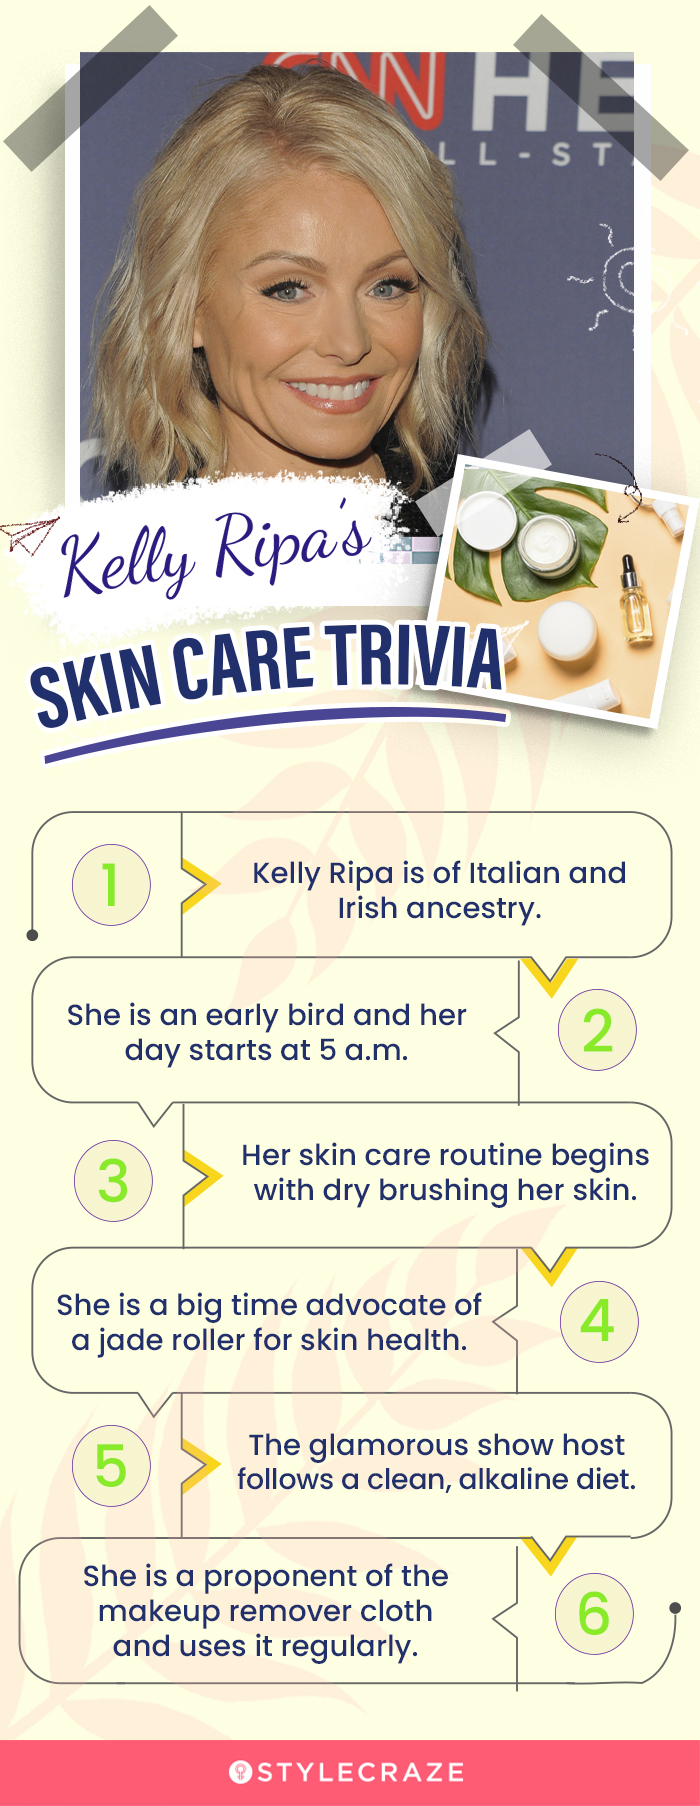 Kelly Ripa’s Skin Care Trivia